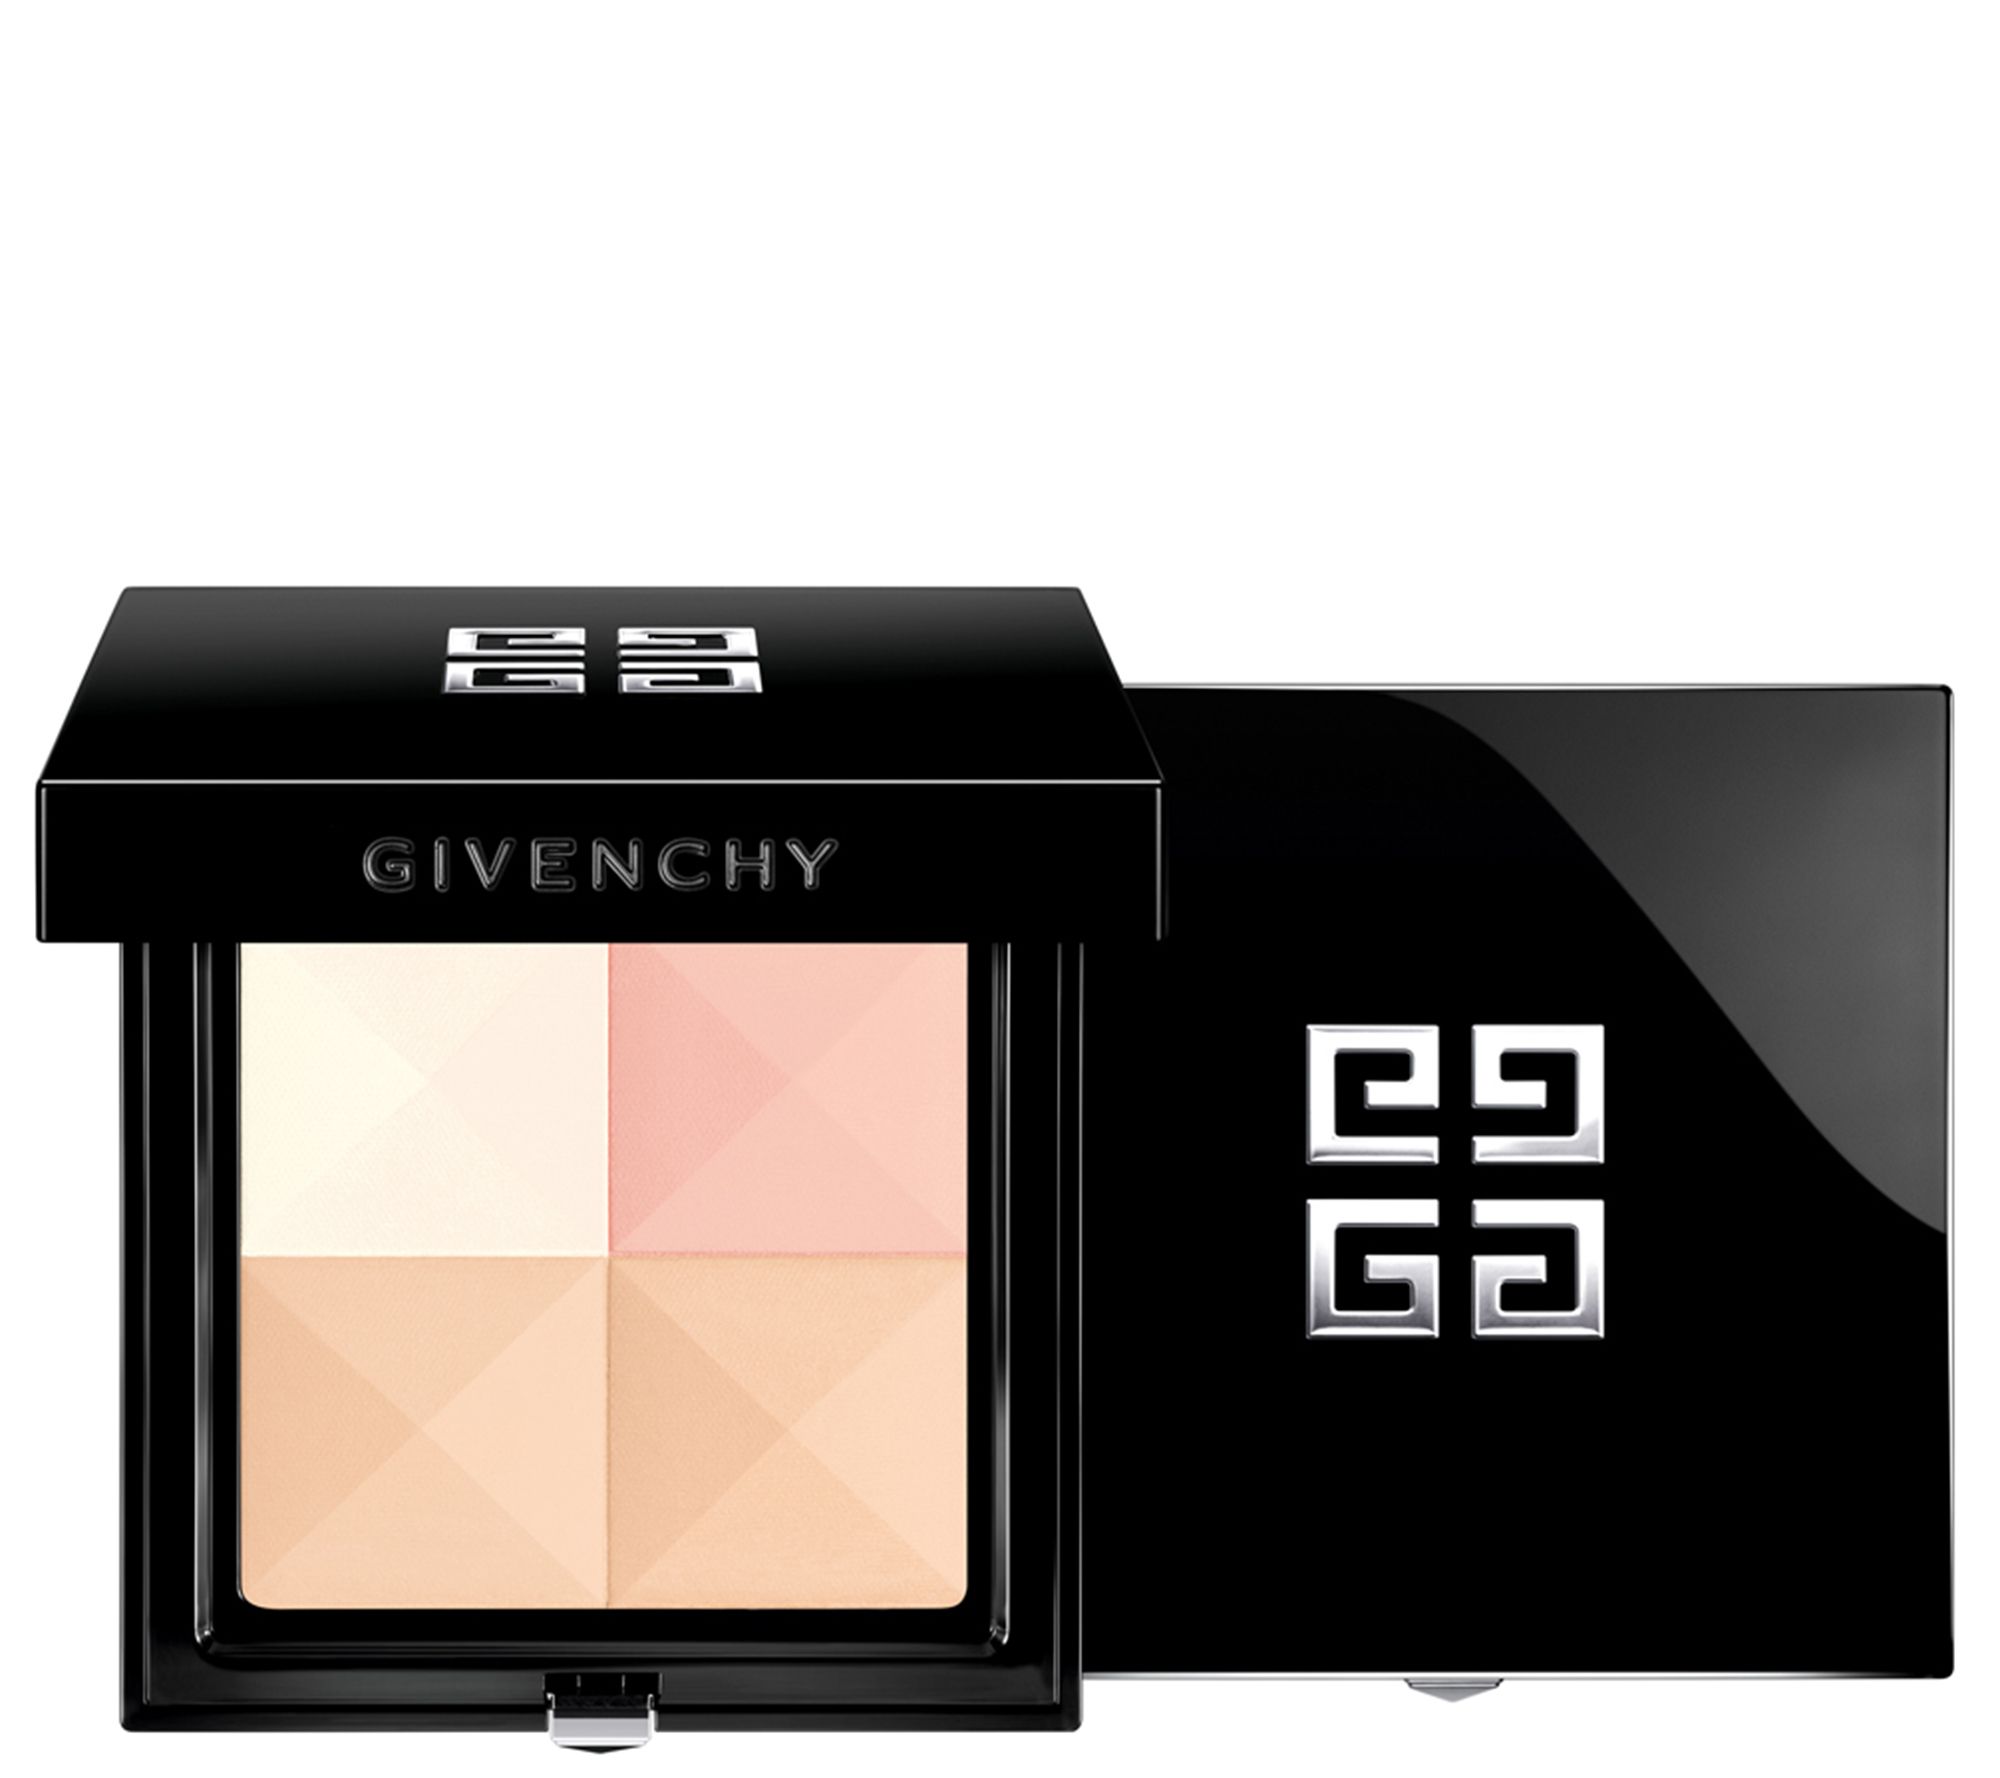 Prisme Visage De Givenchy Sephora